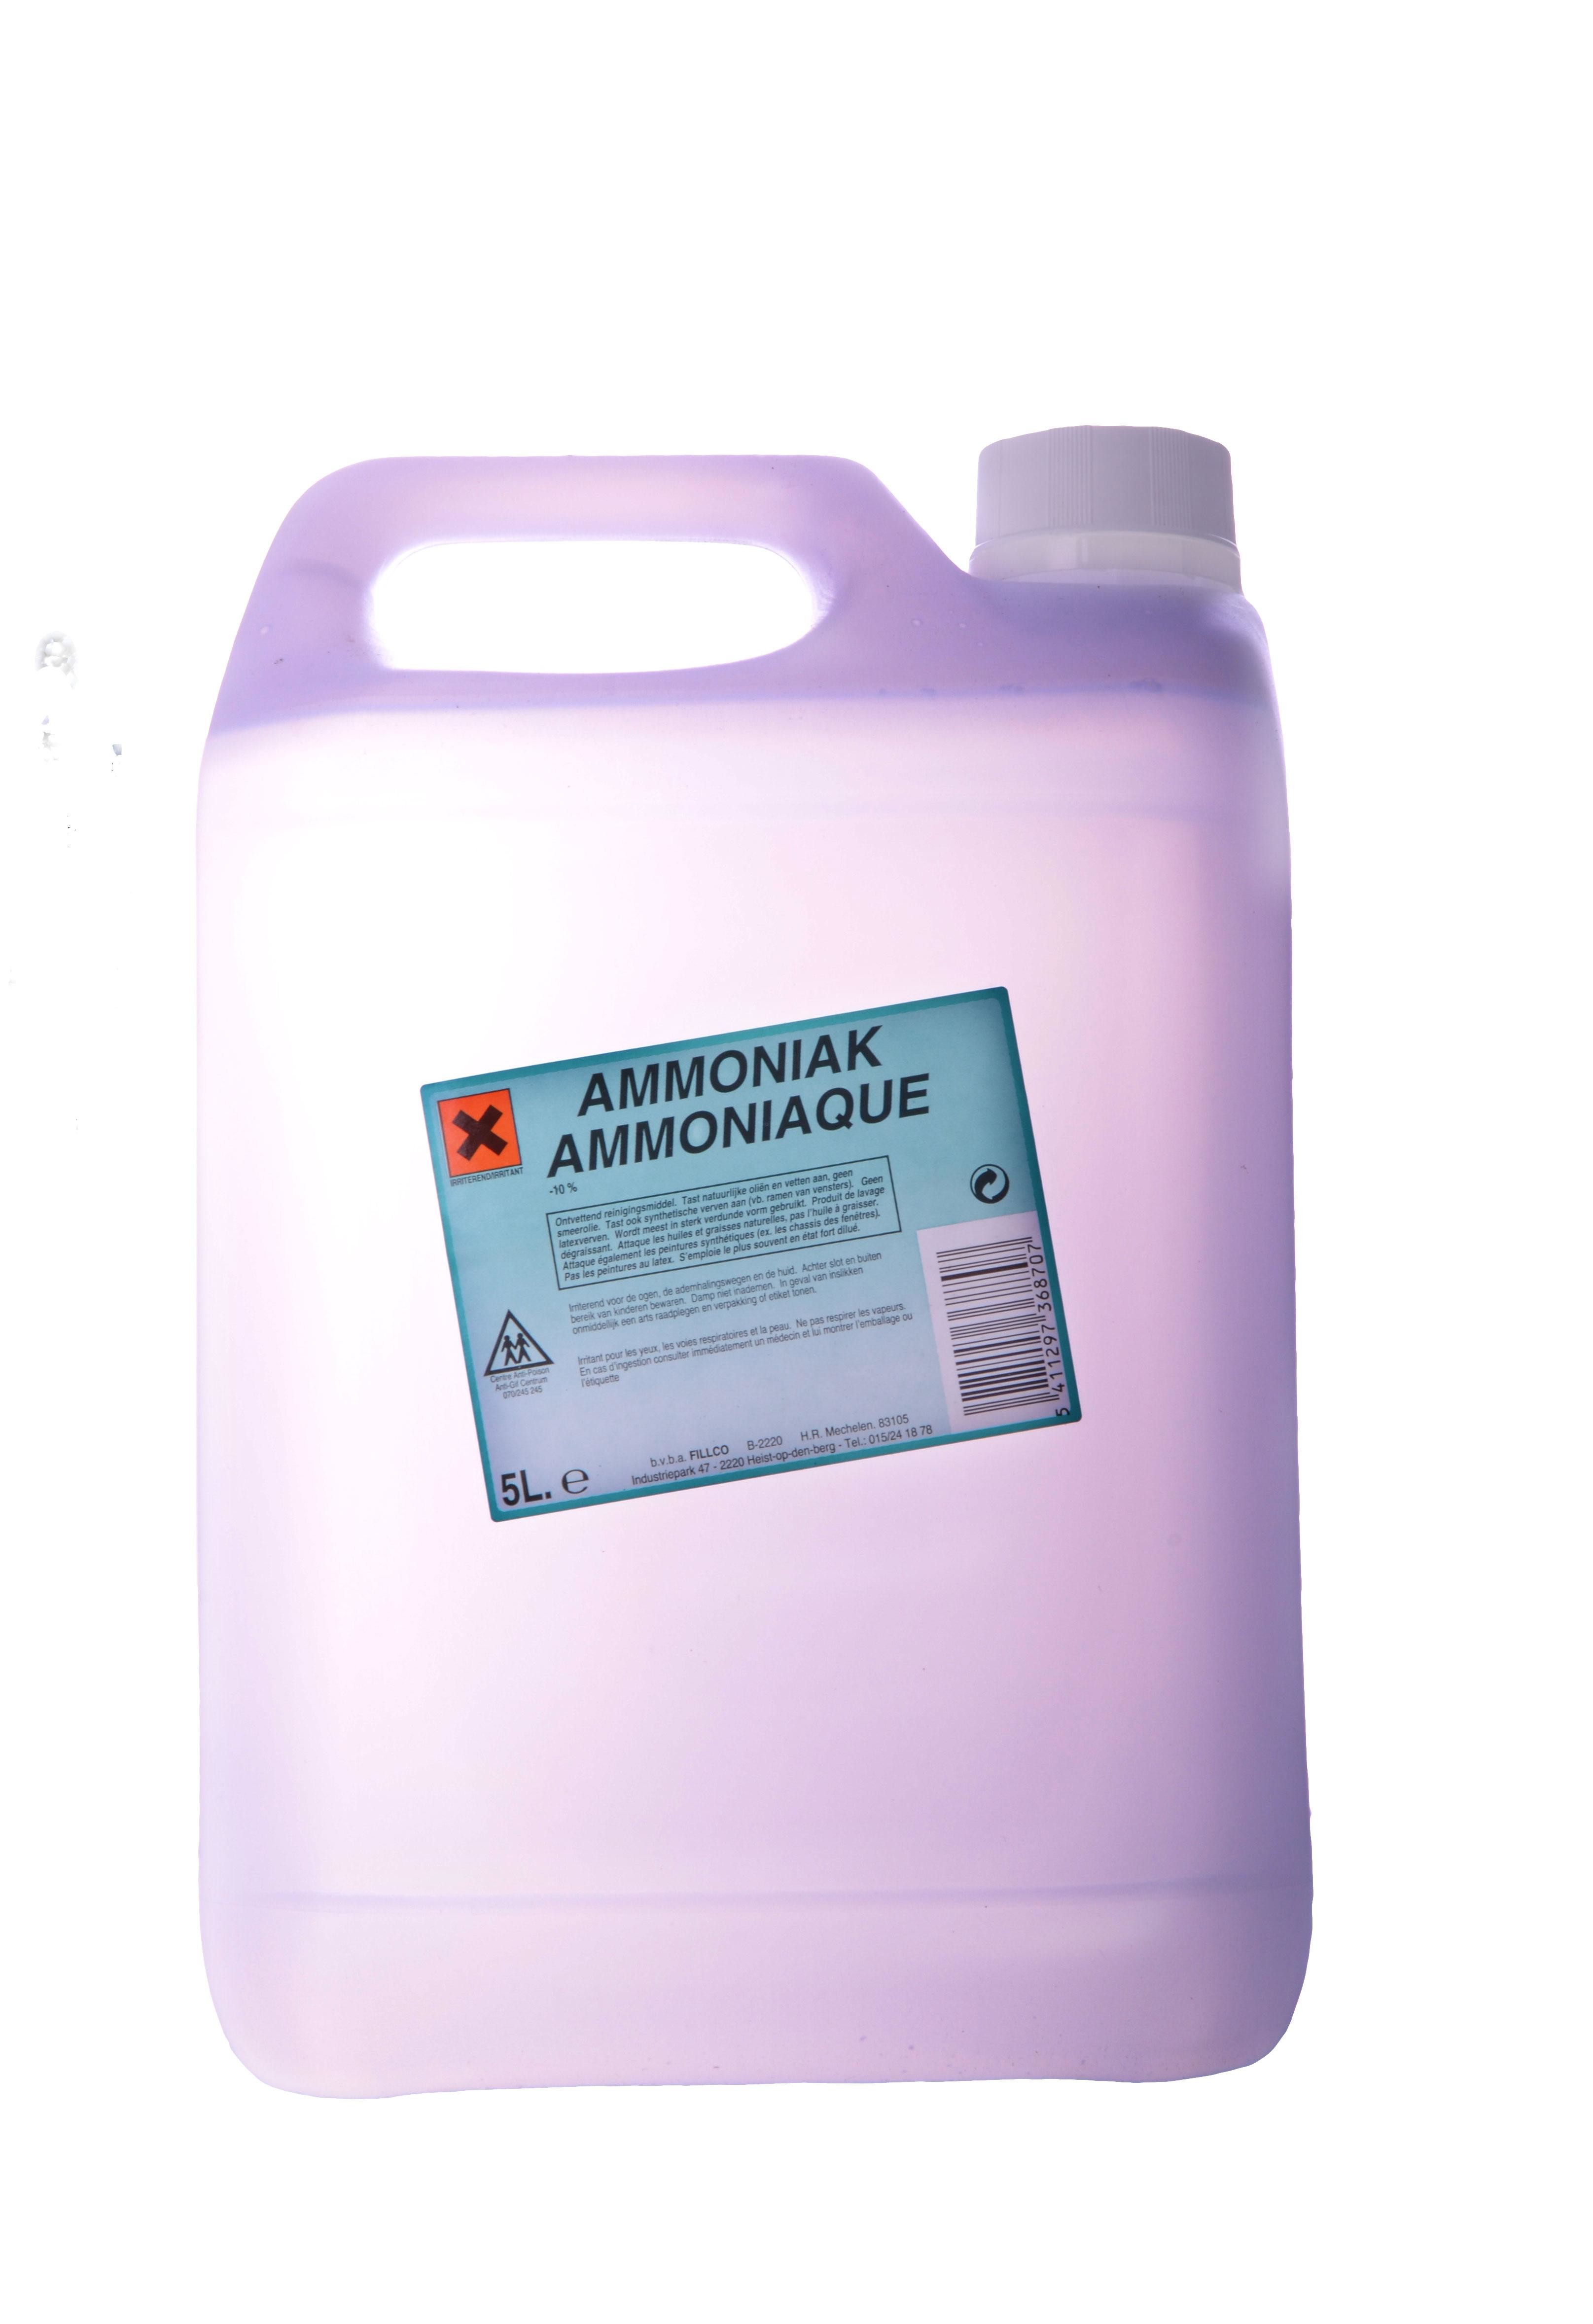 Ammoniaque 5L